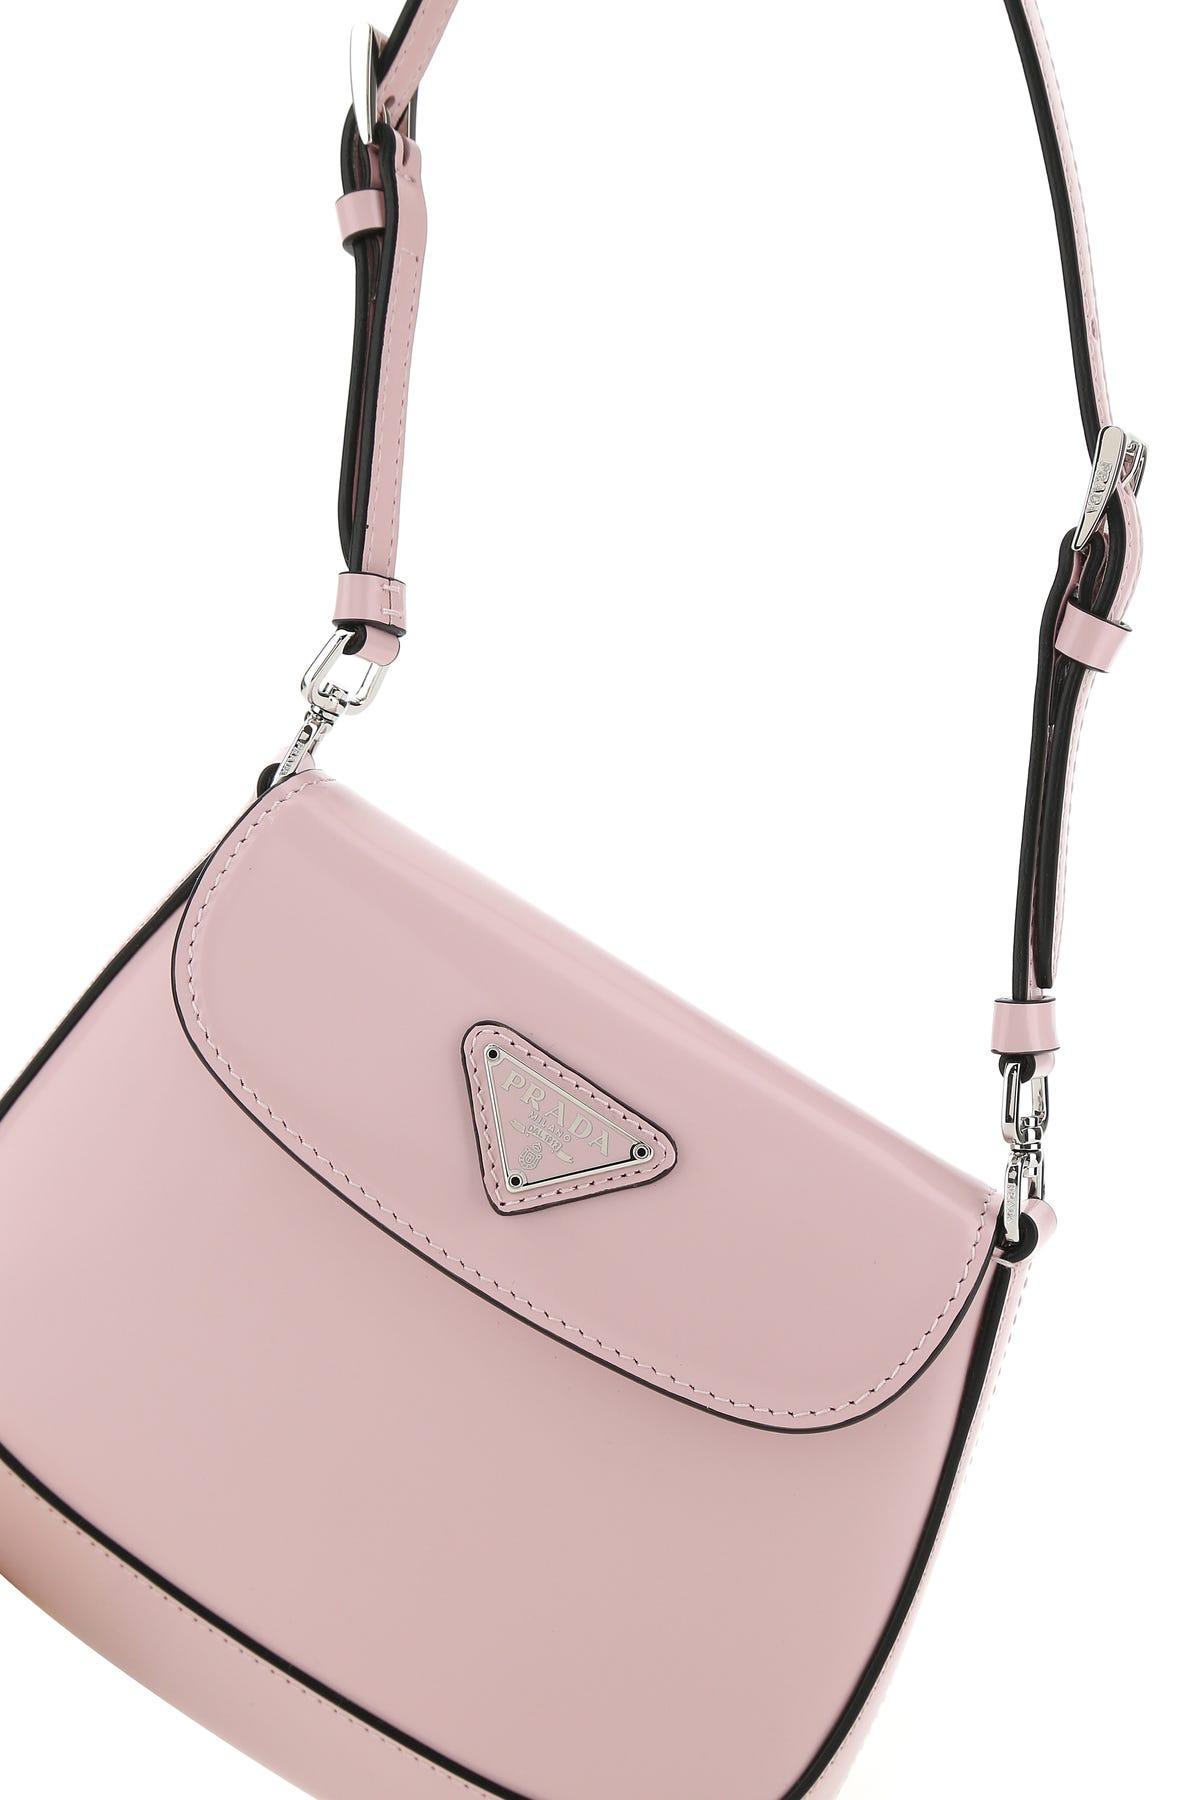 prada pink sling bag